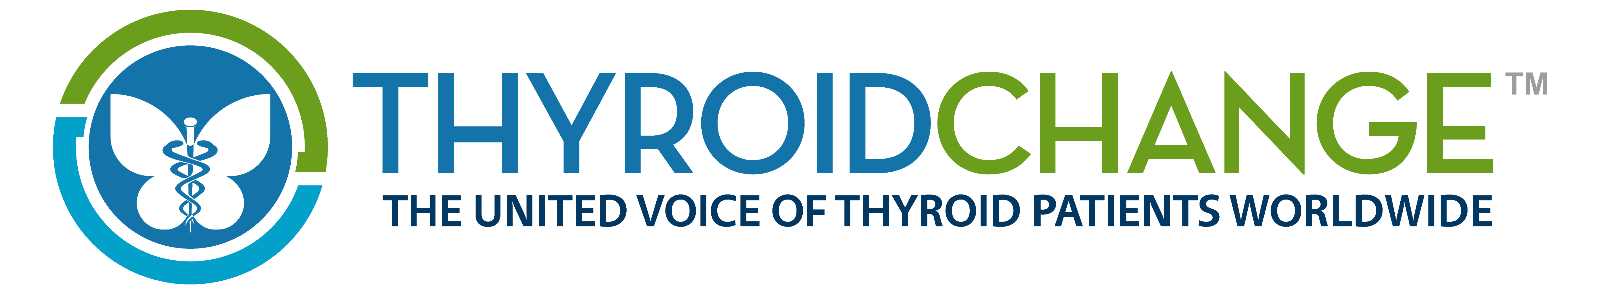 ThyroidChange logo